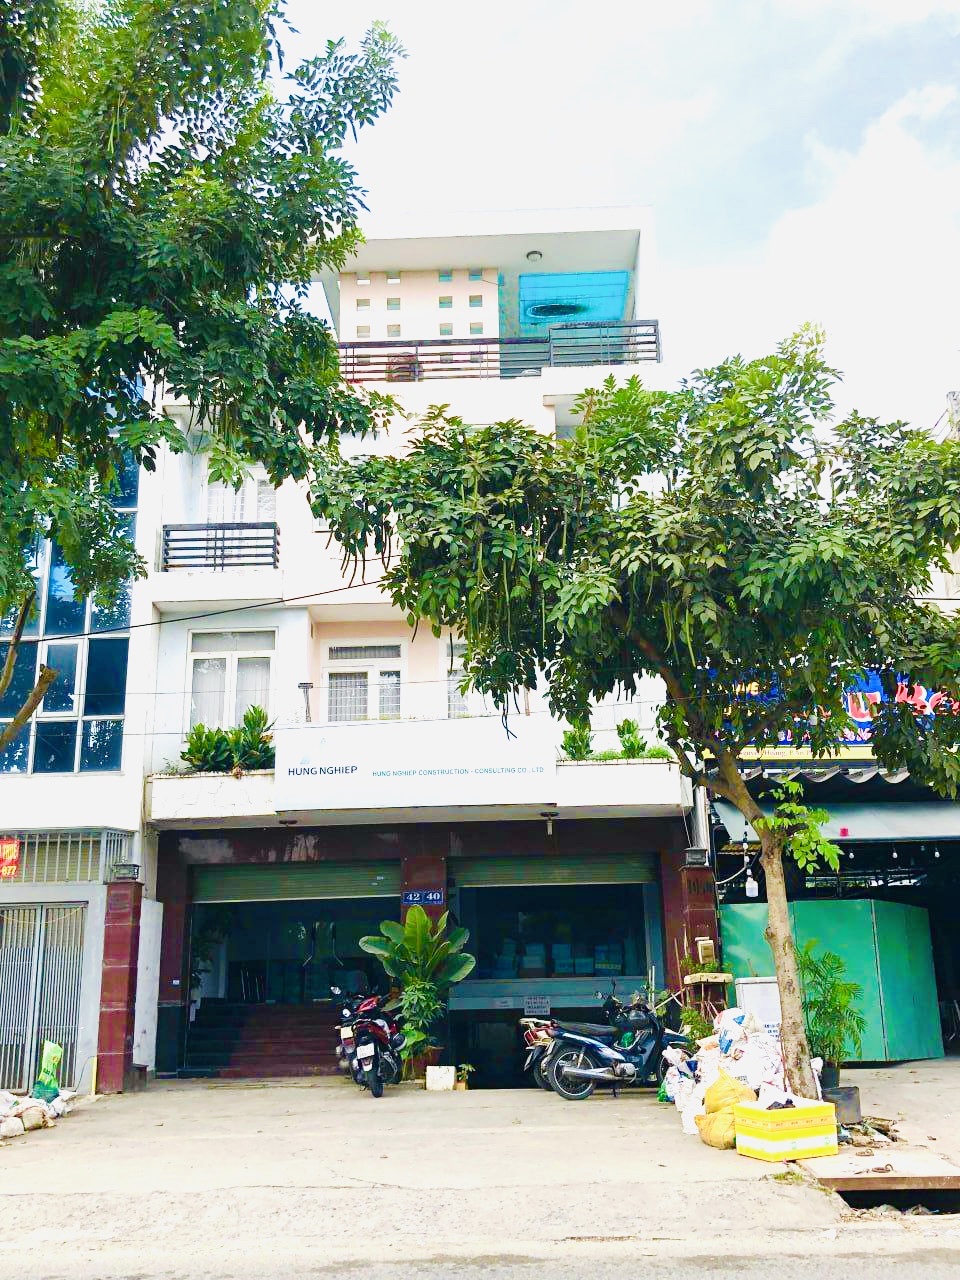 Bán Nhà Mặt Tiền Đường Nguyễn Hoàng,An Phú,Quận 2 DT:160m2(8x20) 1 Hầm,Trệt,2 Lầu